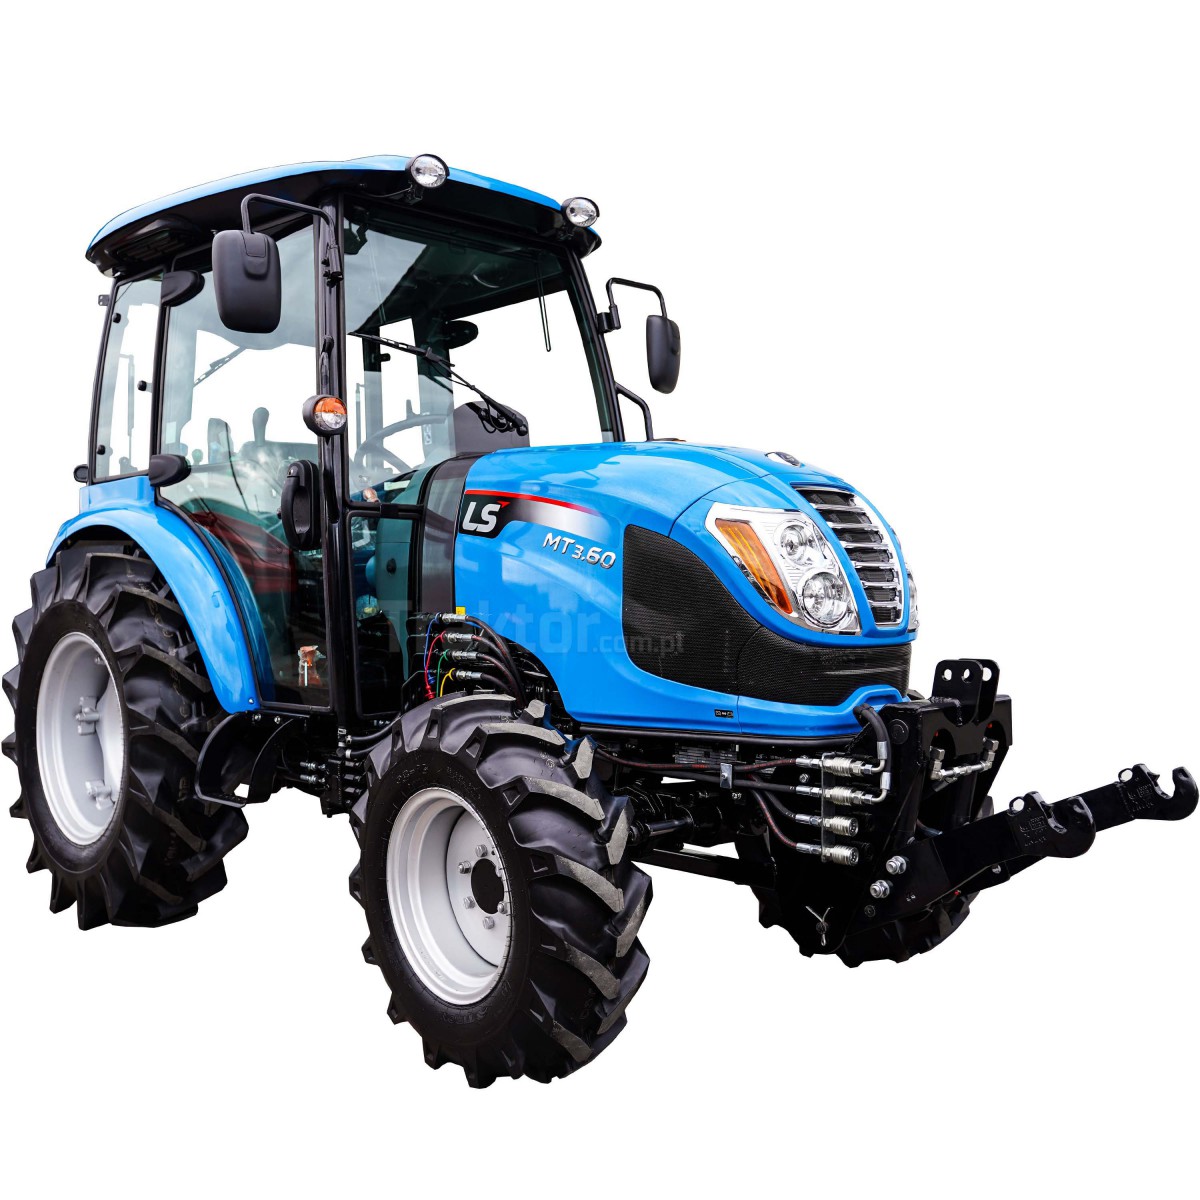 Tracteur LS MT3.60 MEC 4x4 - 57 CV + relevage avant Premium 4FARMER